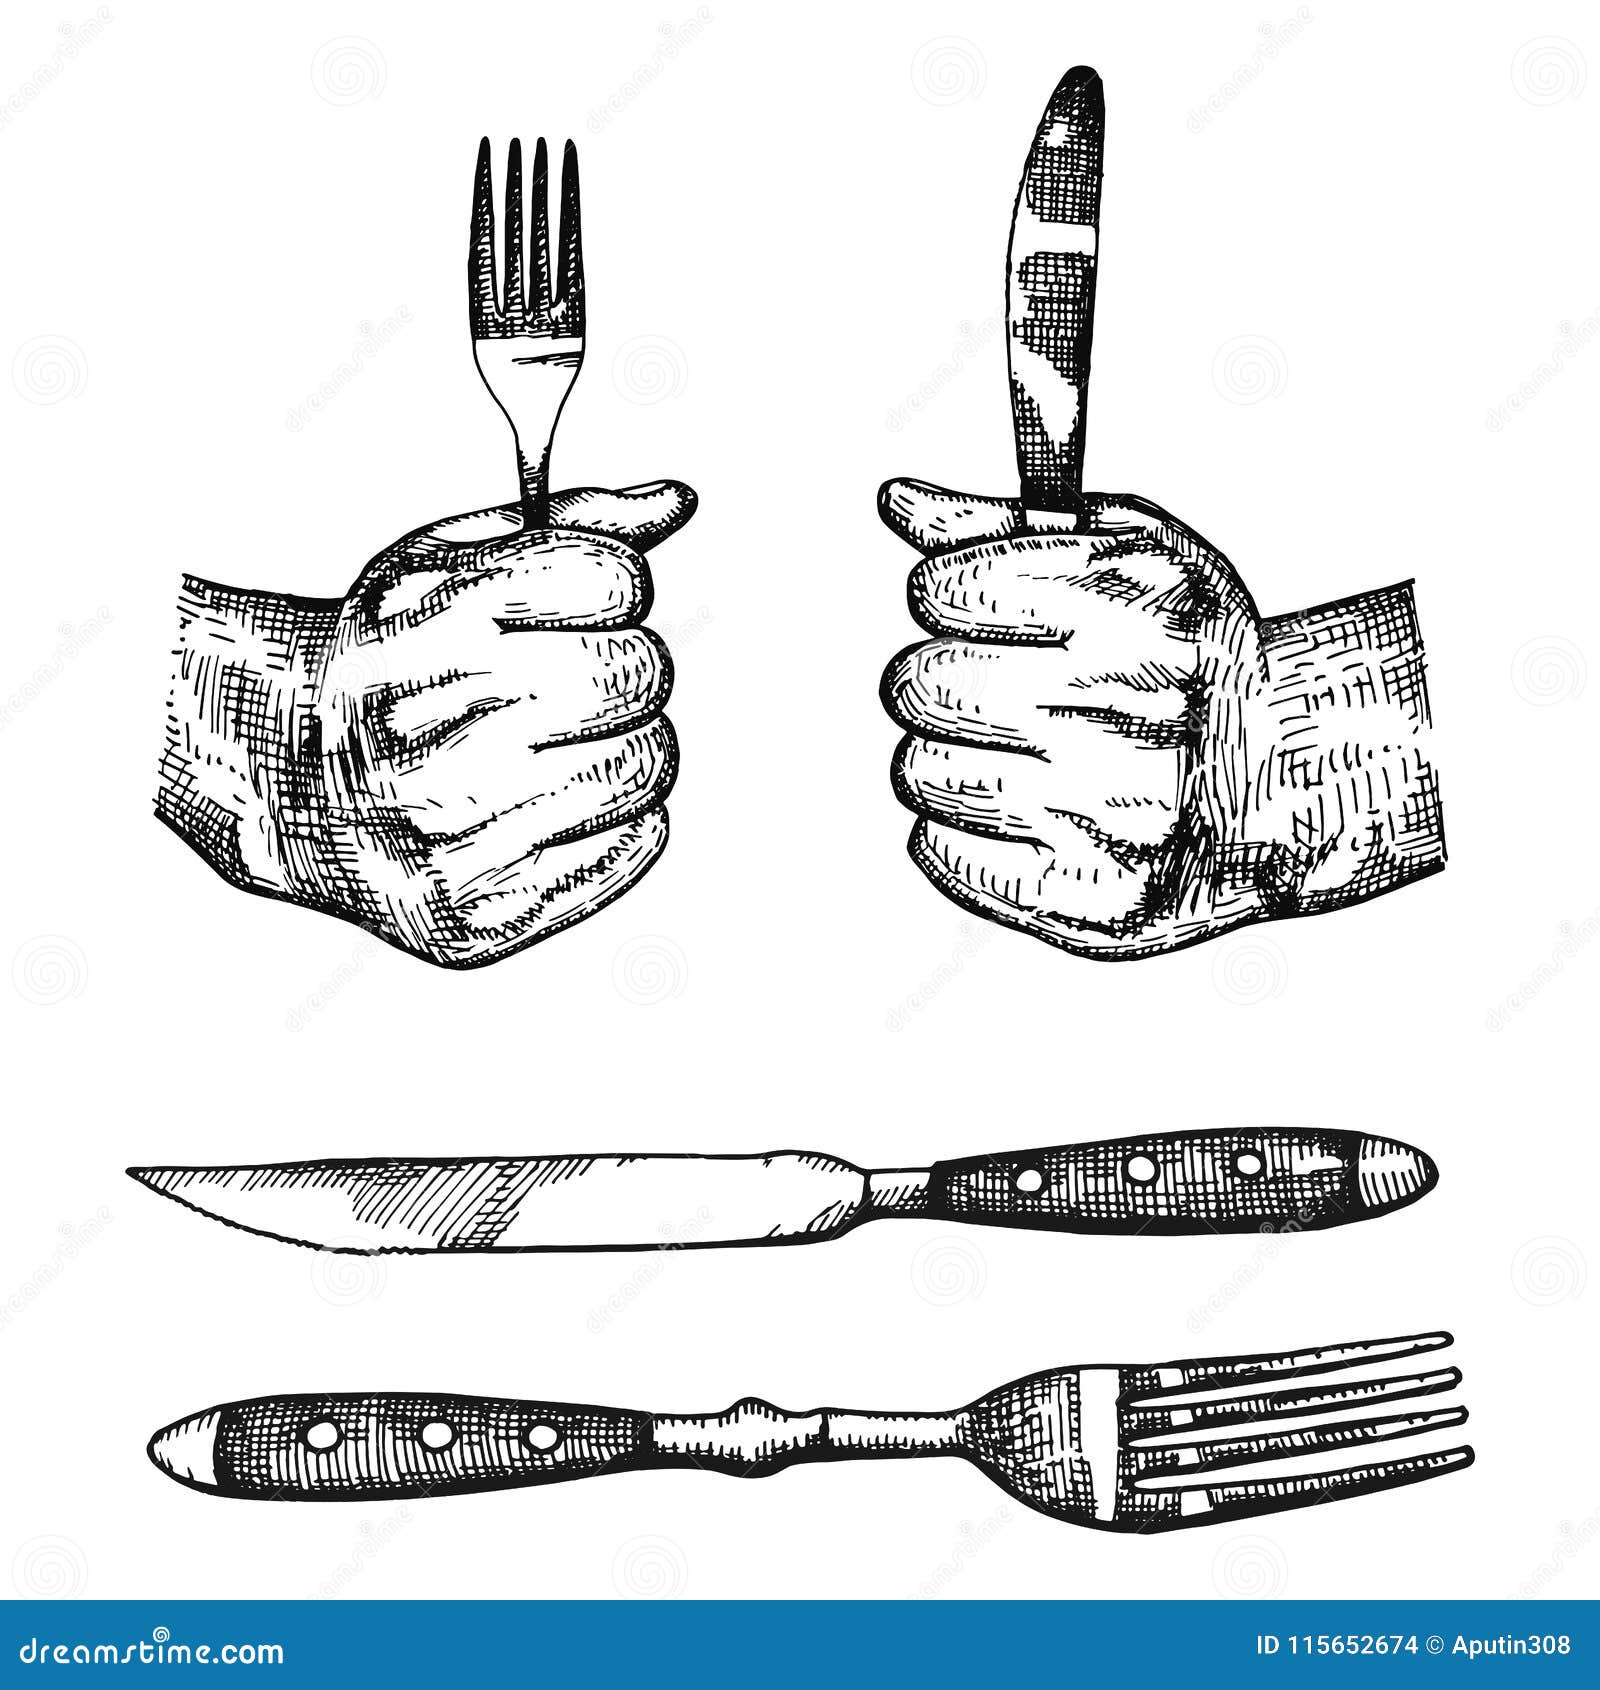 Ножик вилку или ложку не держите. Руки с вилкой и ножом. Нож-вилка. Нарисованные руки с вилкой и ножом. Руки нож и вилка иллюстрация.